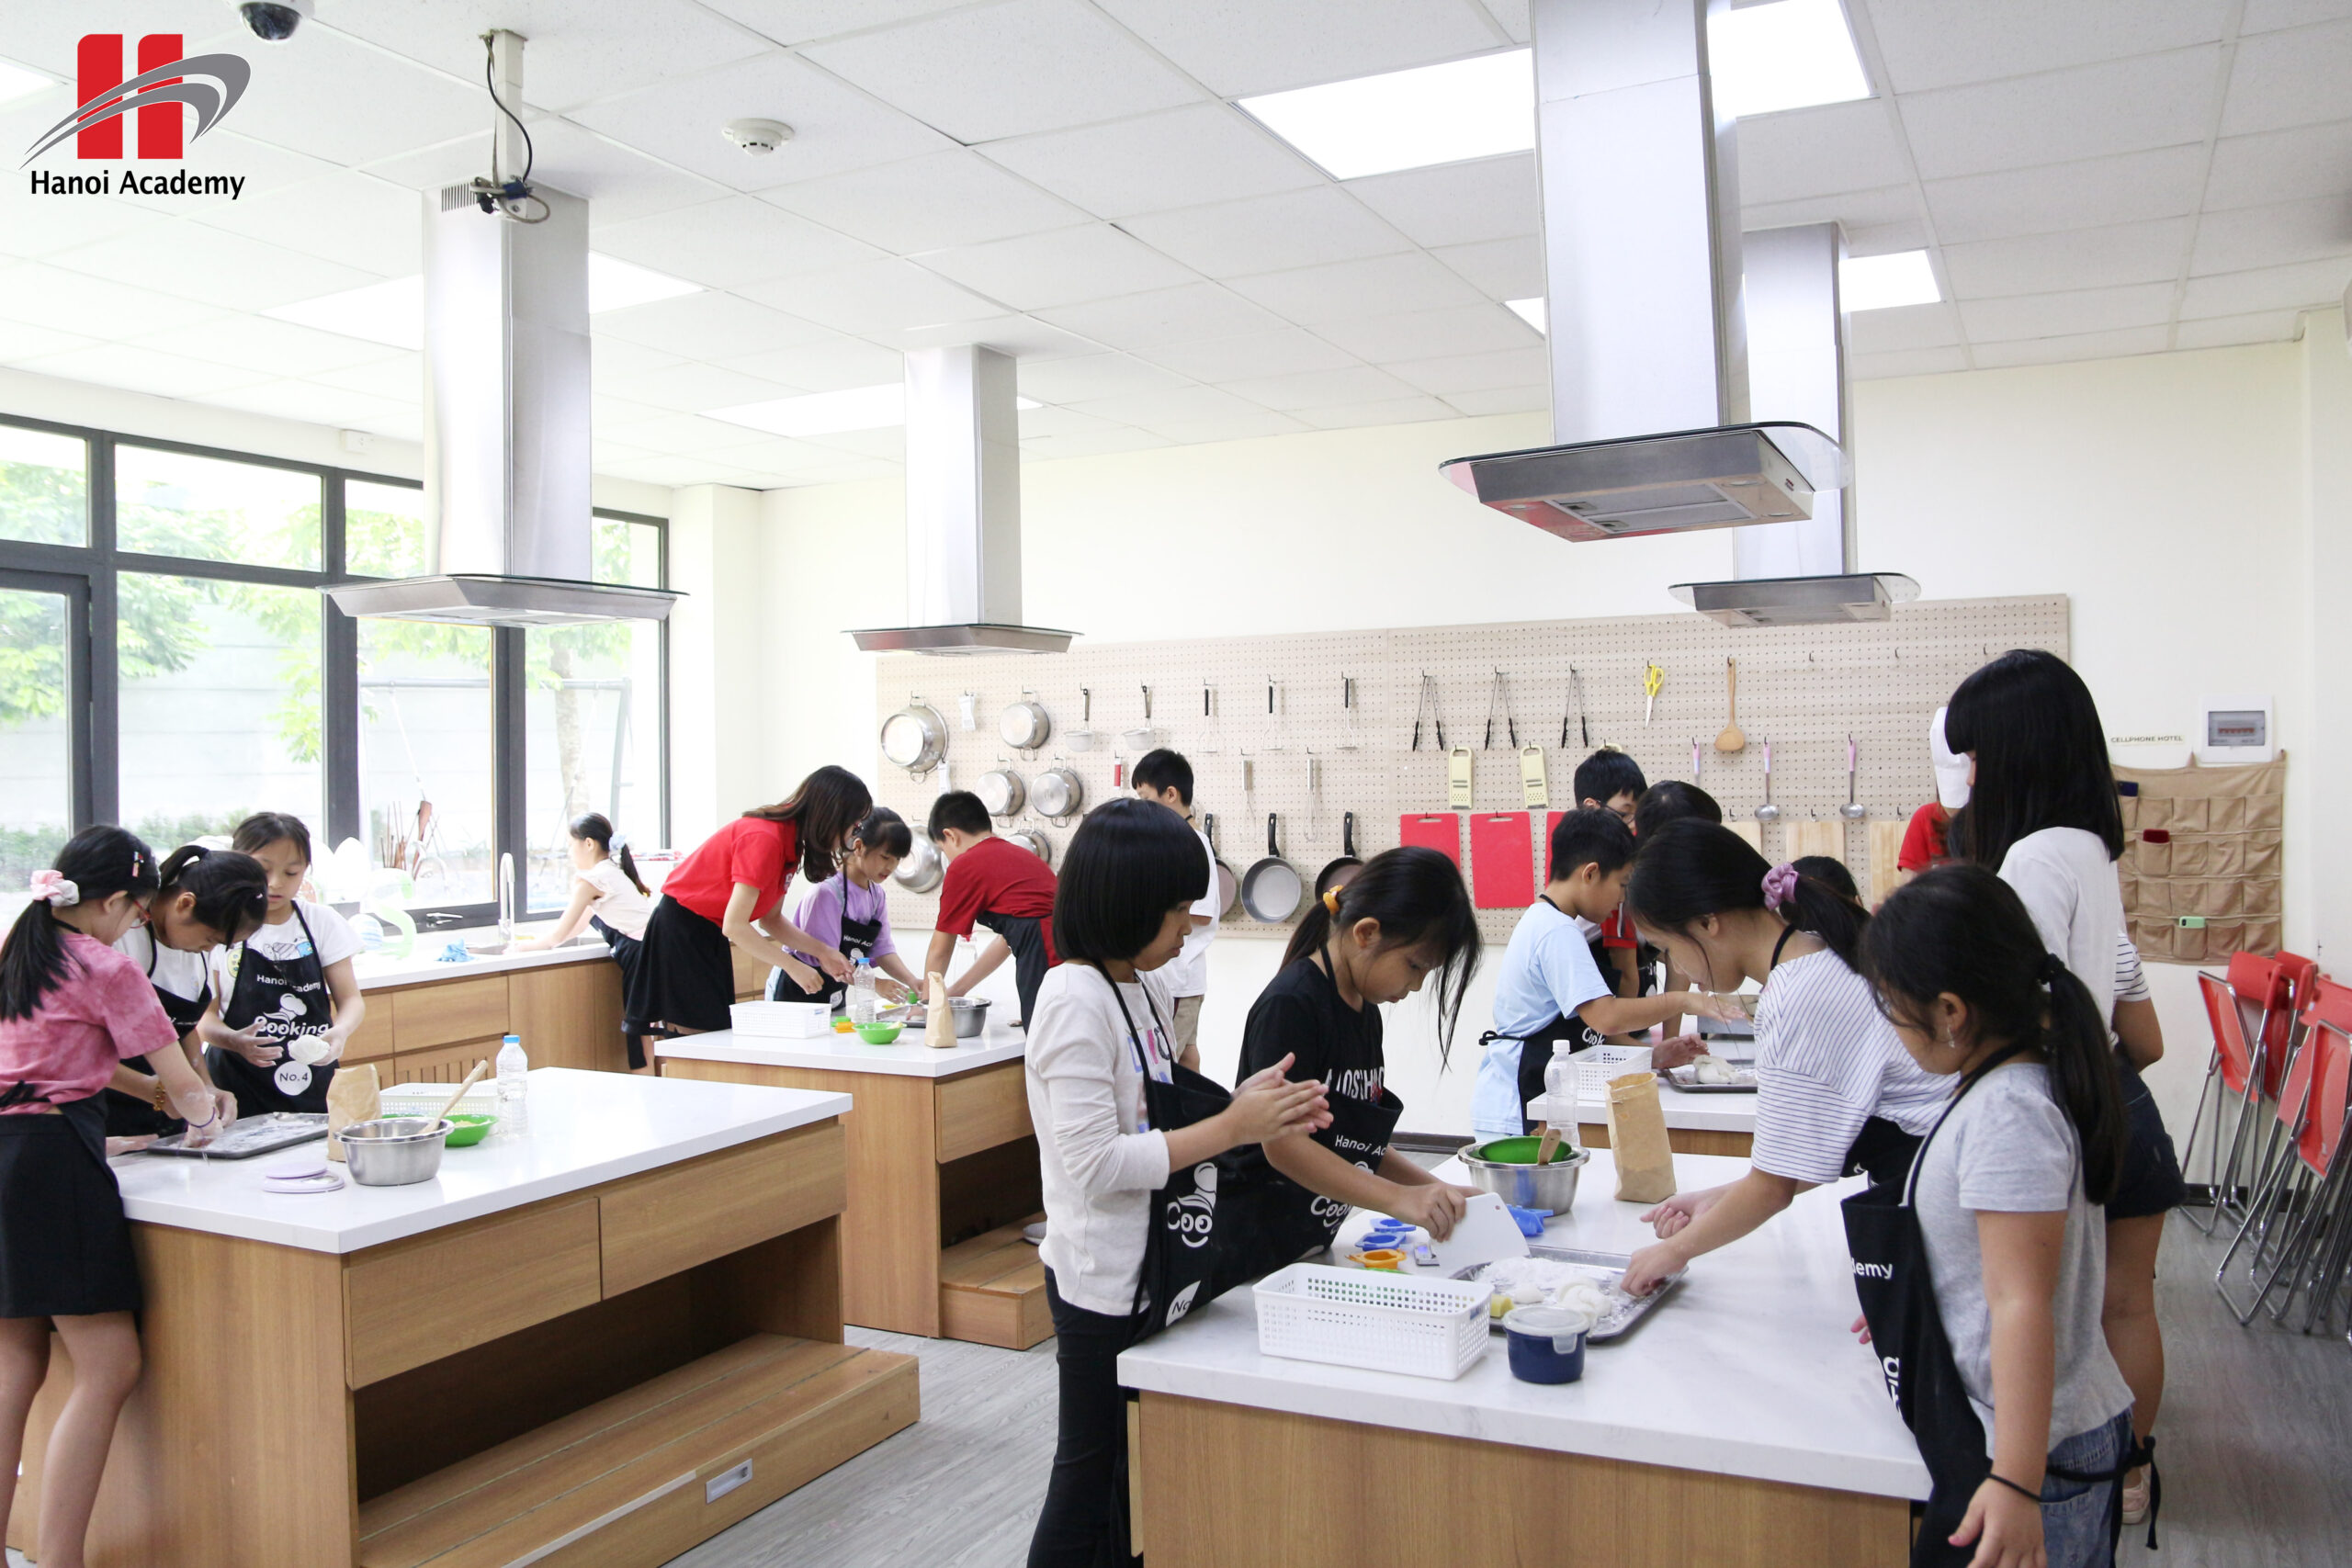 Tập làm bánh trung thu với những đầu bếp nhí của Hanoi Academy